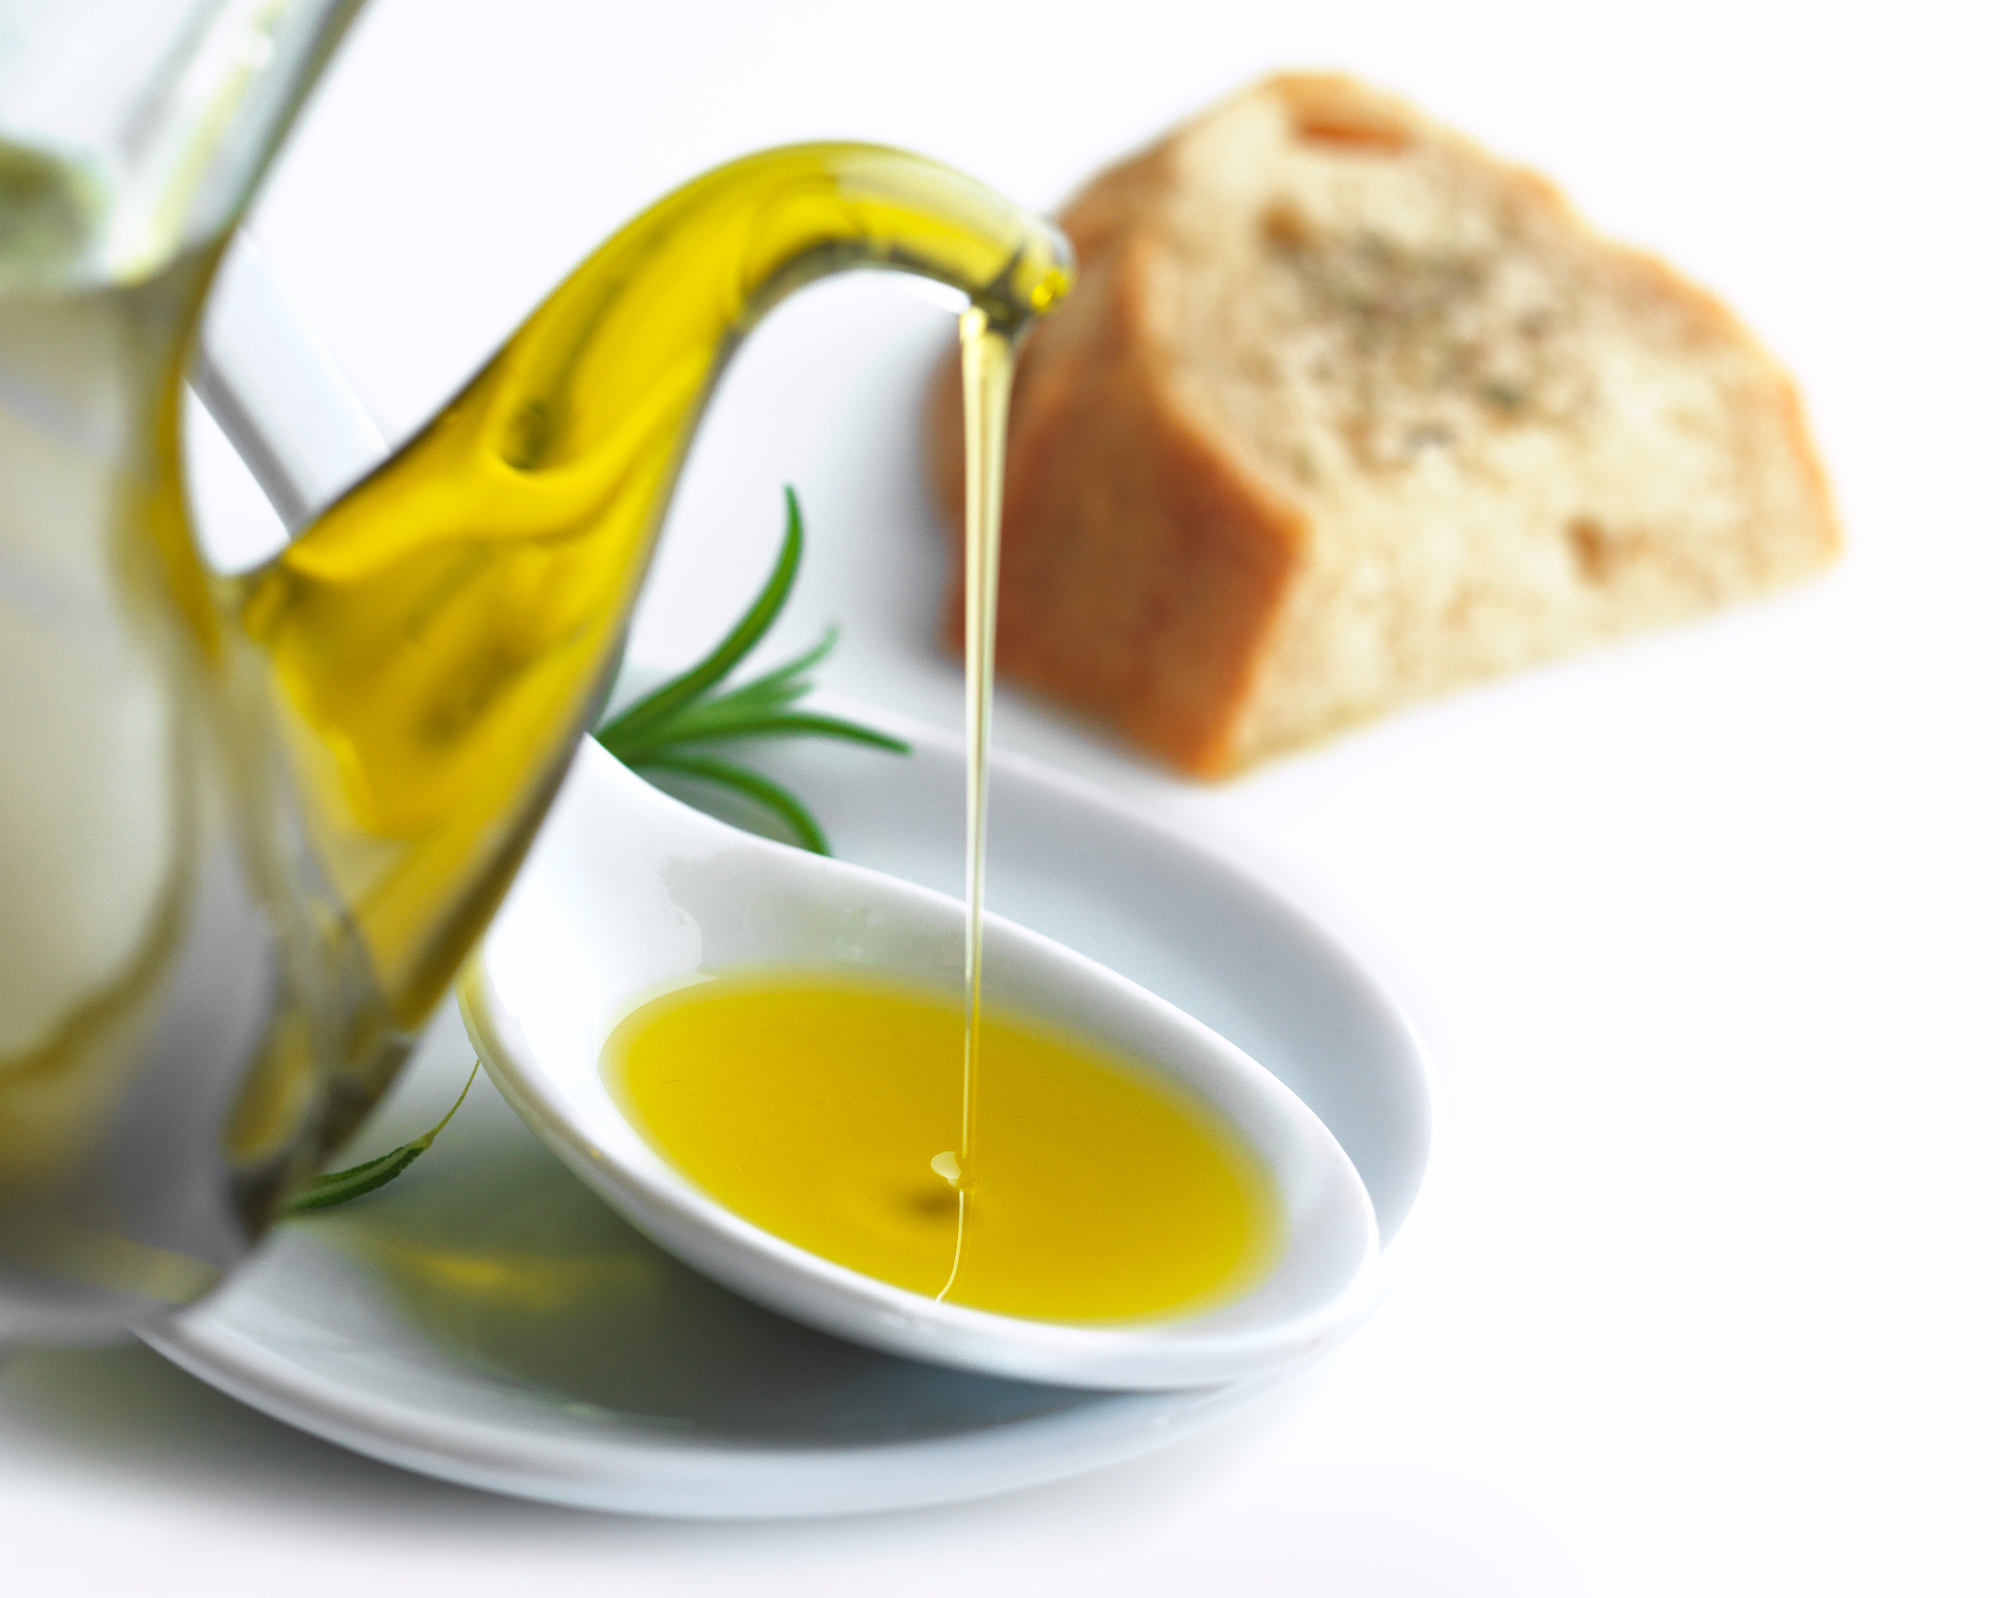 Olivno olje nam lahko prinese mnoge beneficije